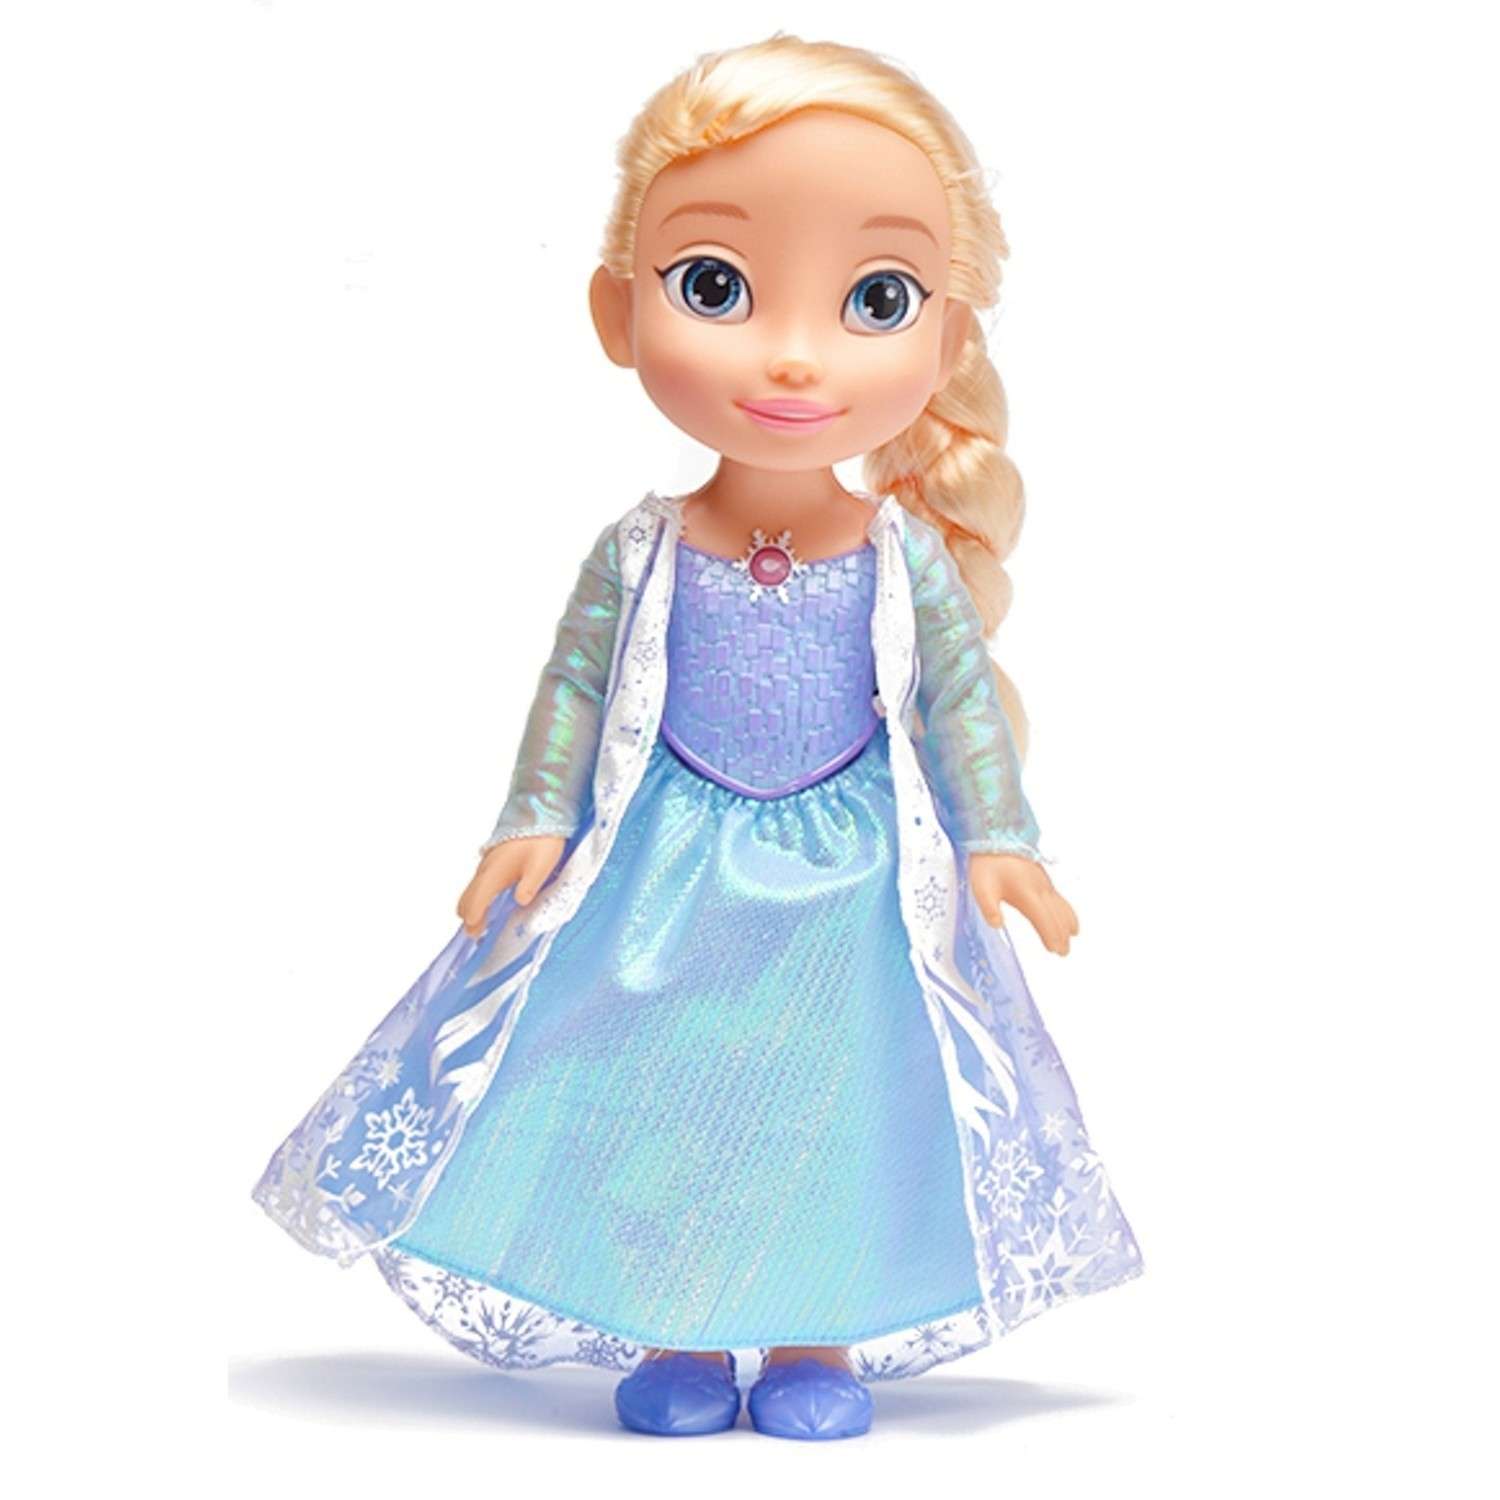 Кукла Disney Снежинка Эльзы интерактивная 29775 - фото 1